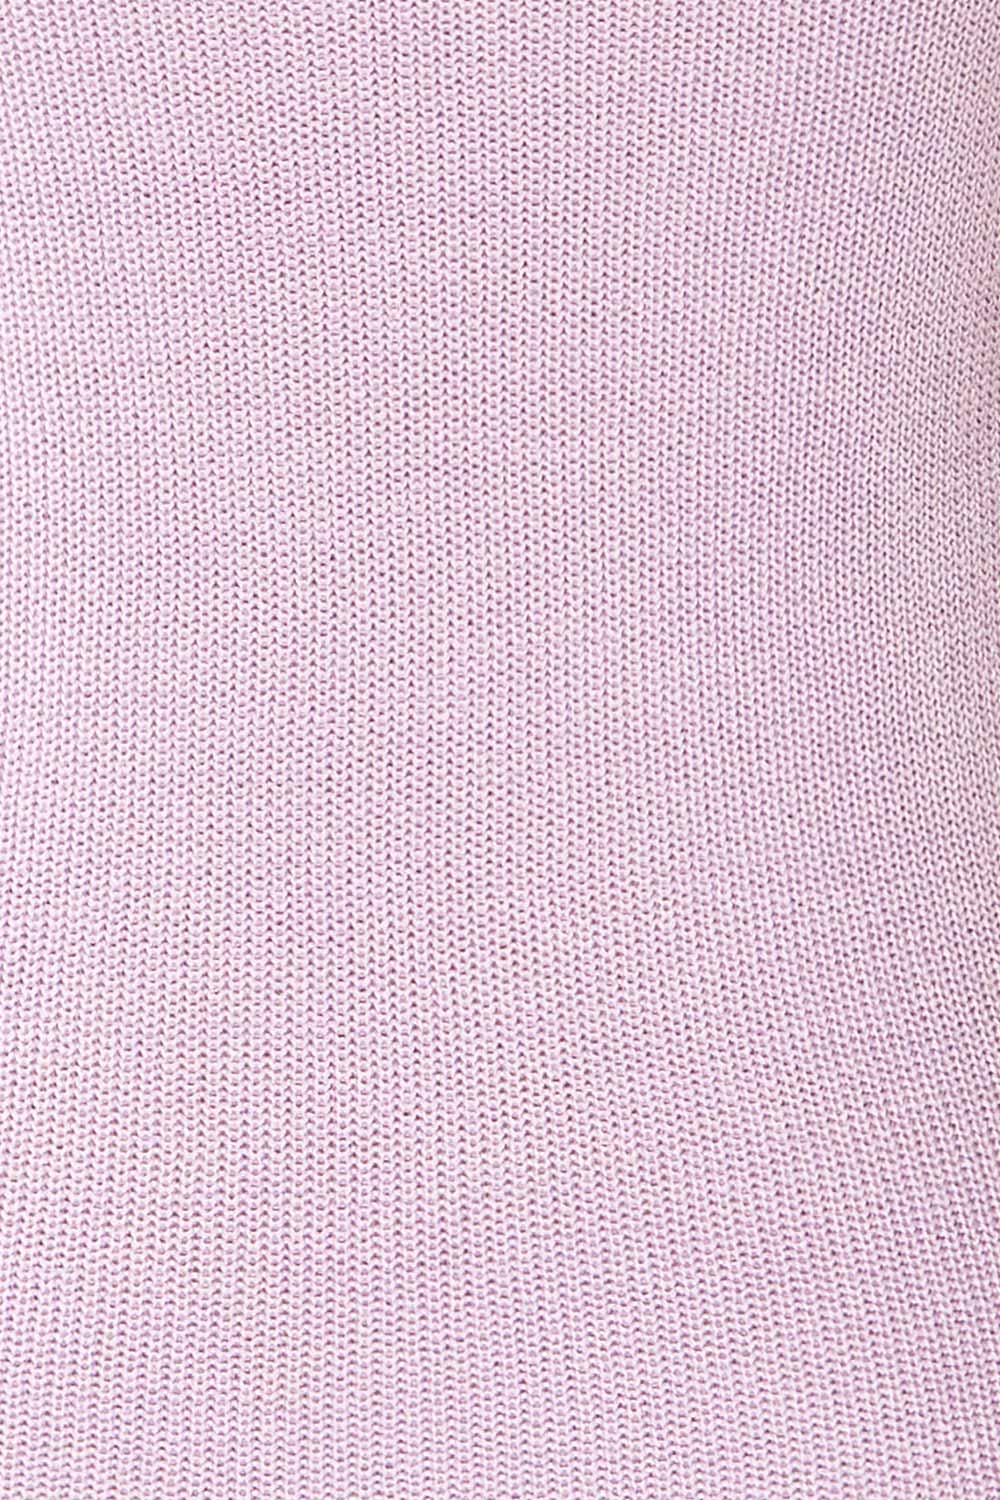 Juva Lilac V-Neck Knit Tank Top | La petite garçonne fabric 